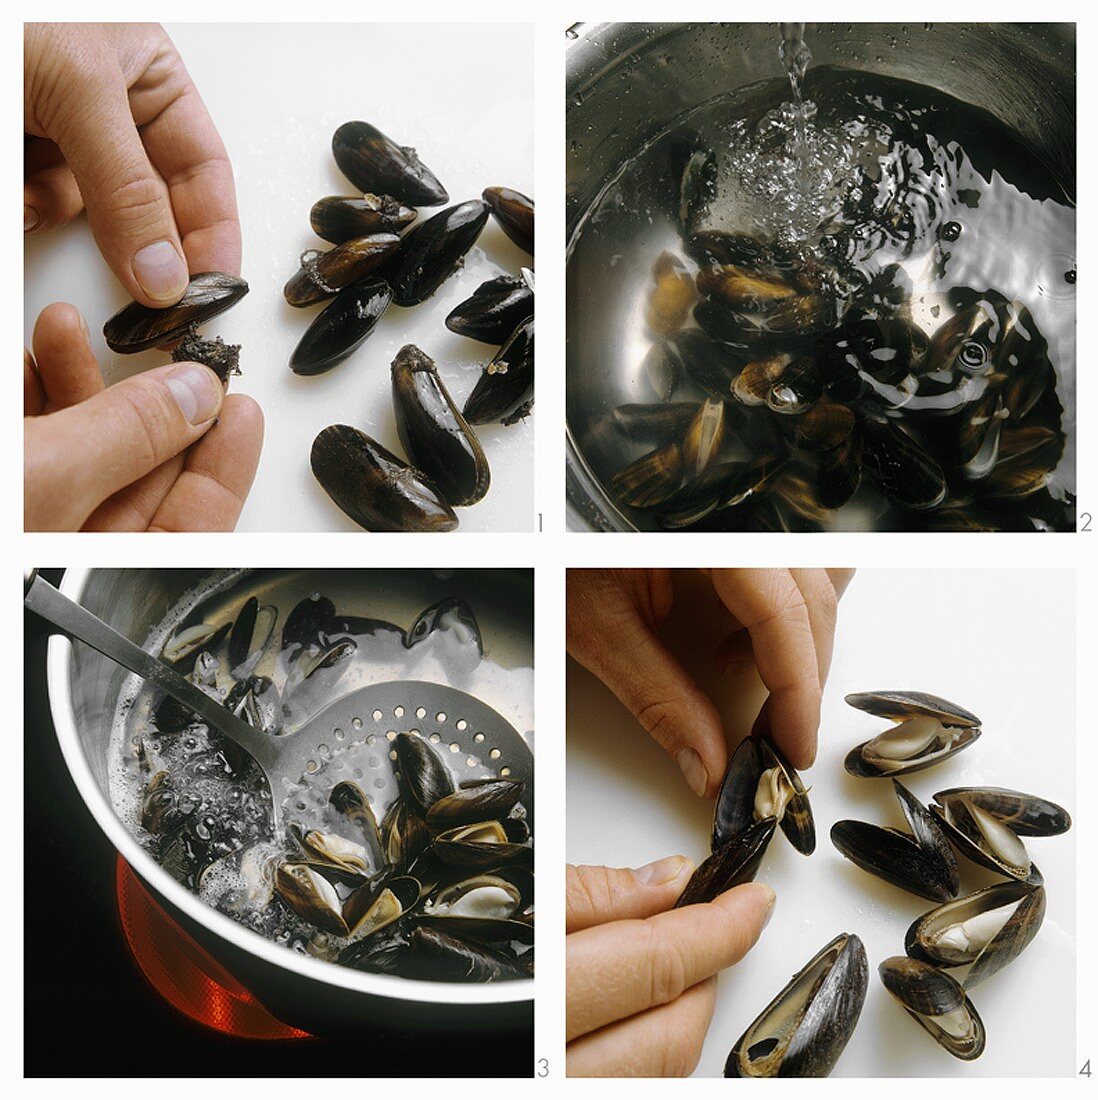 Preparing mussels